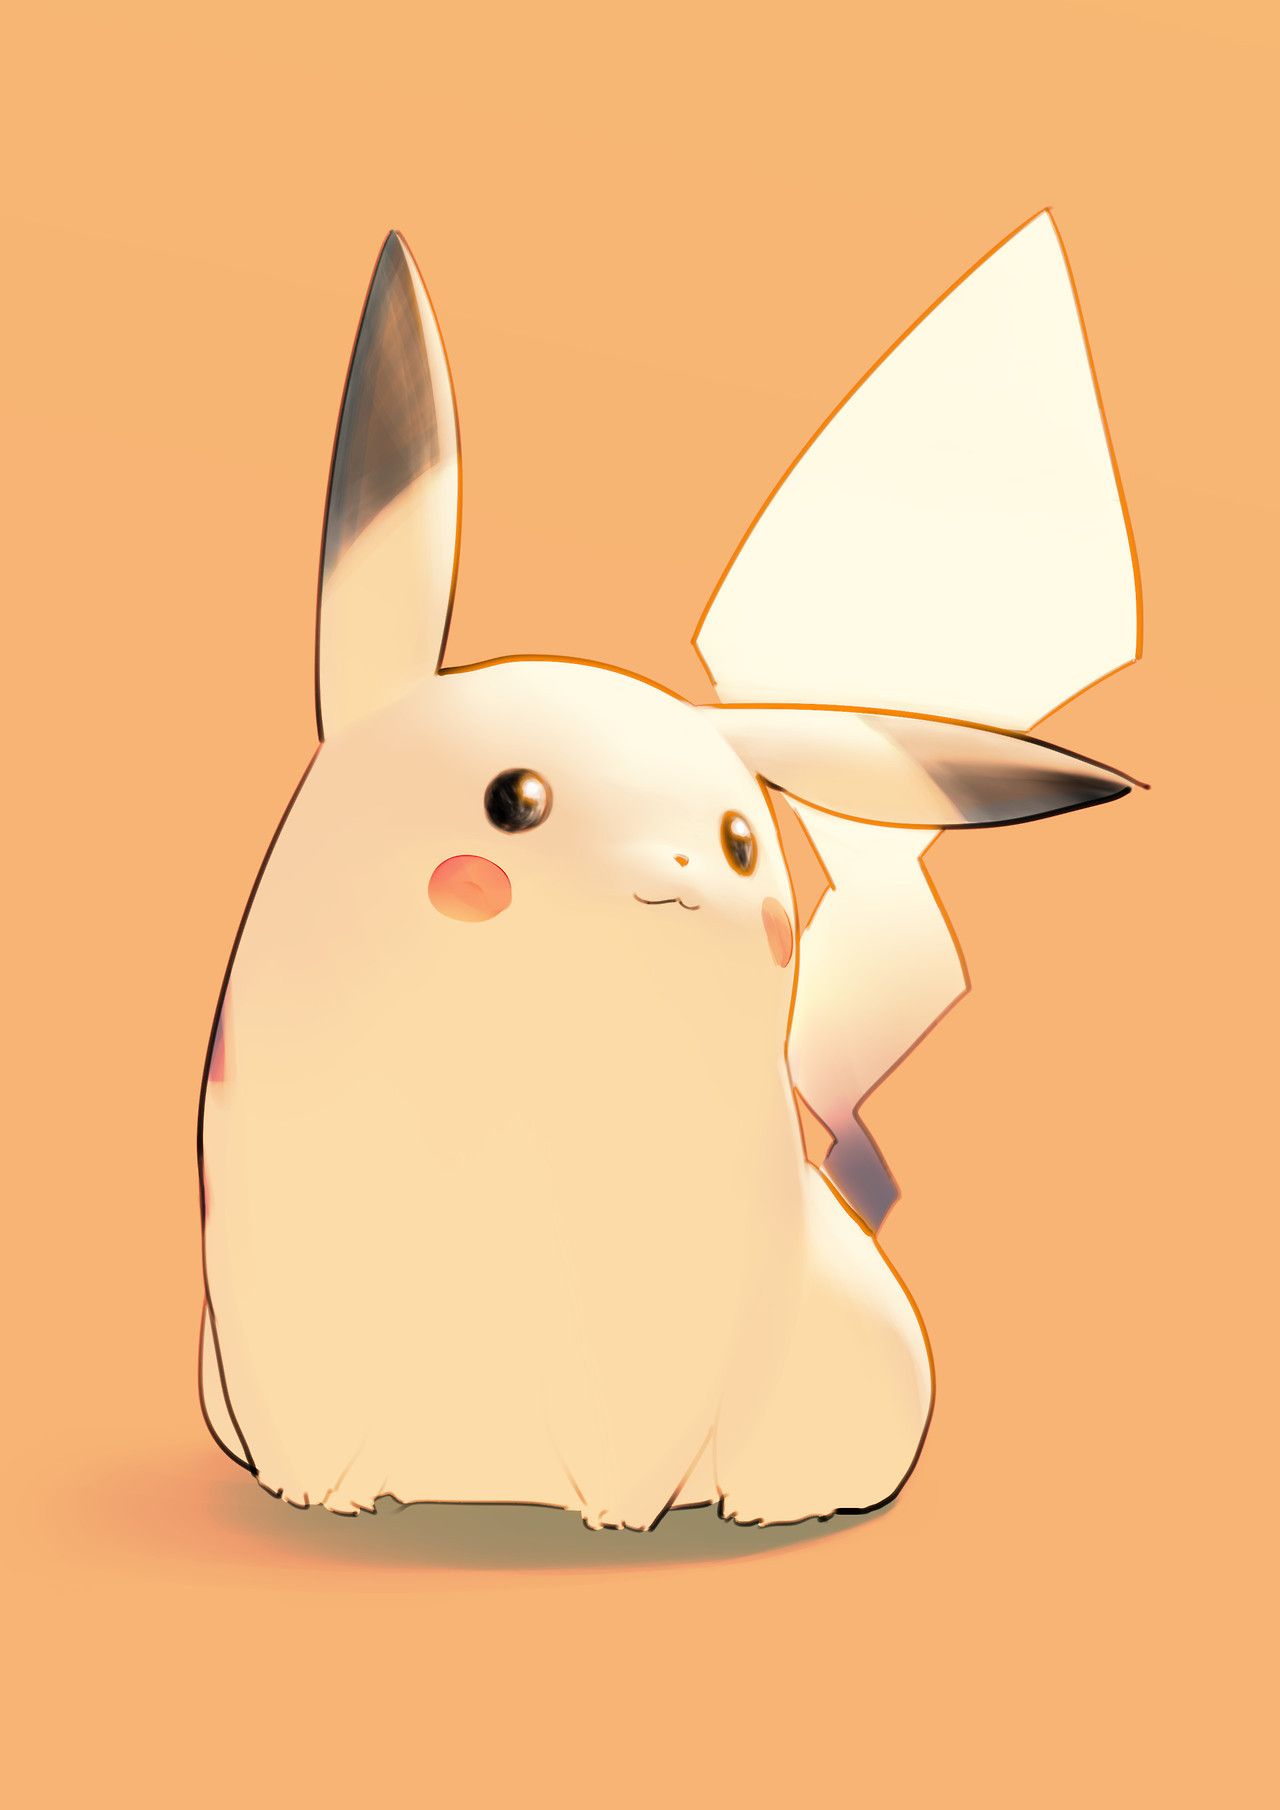 chubby pikachu